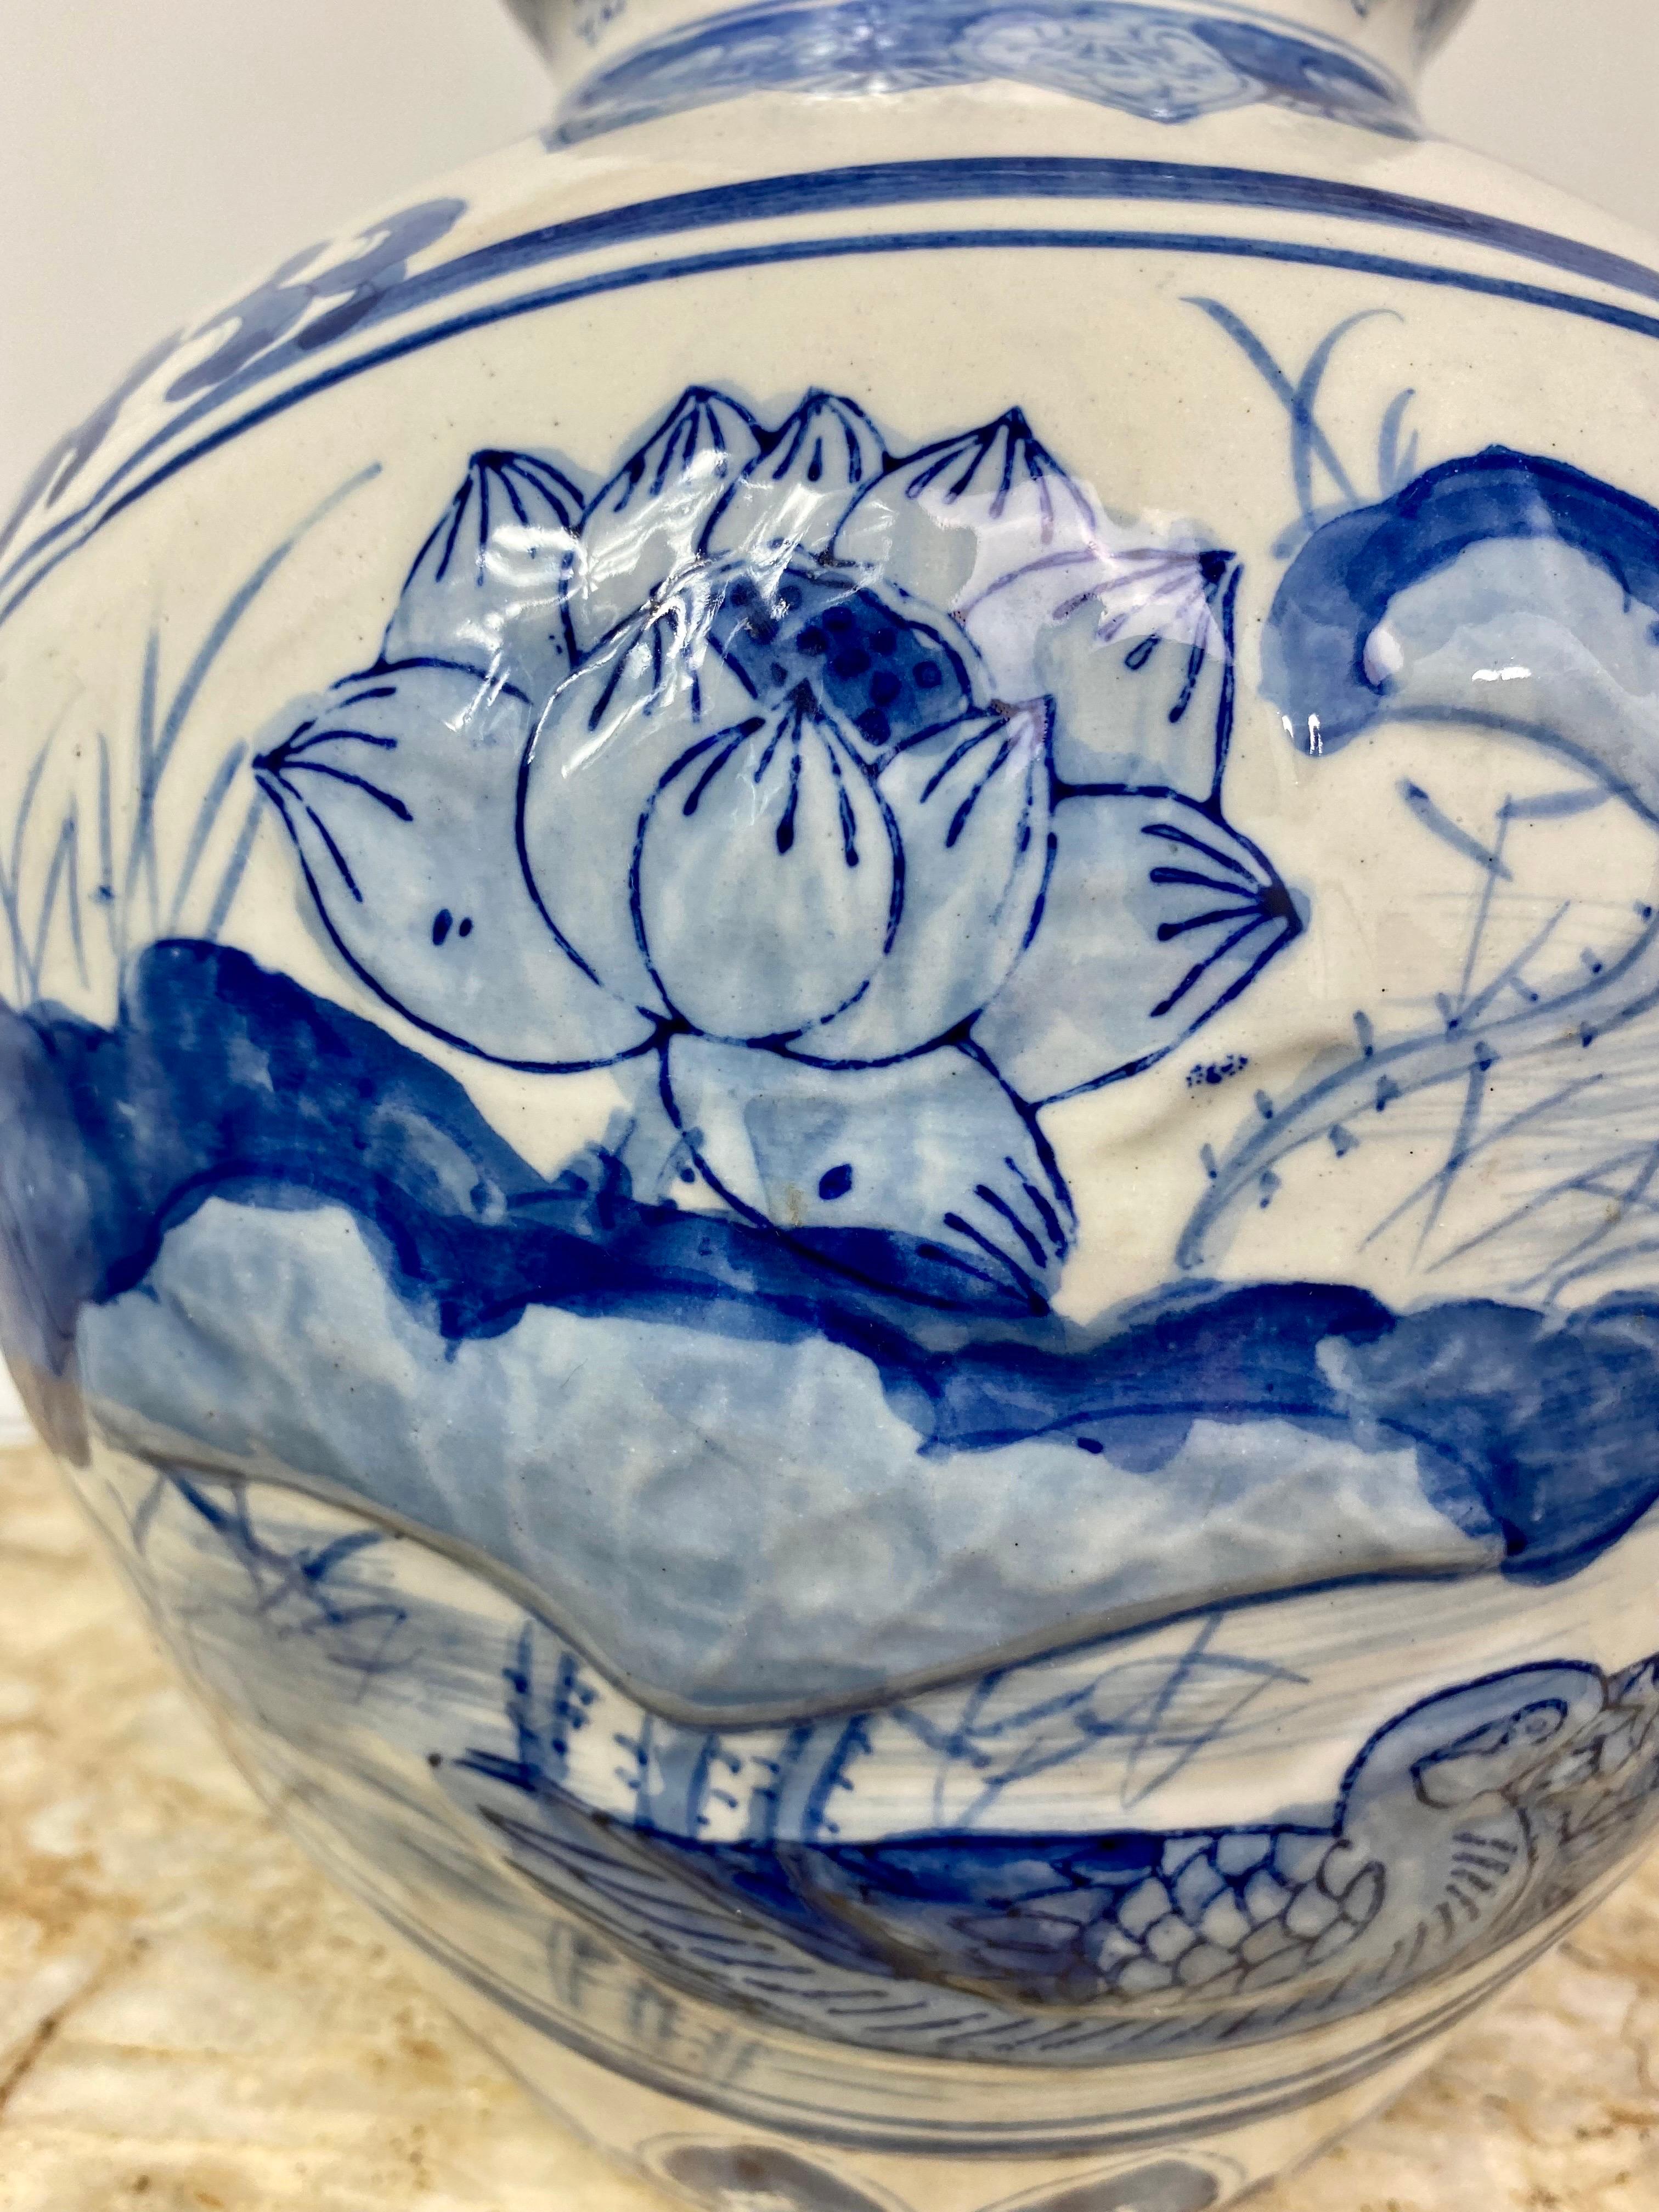 Eiförmiges blau-weißes Porzellangefäß mit Enten- und Lotusblumenmotiv.
China republikanische Zeit